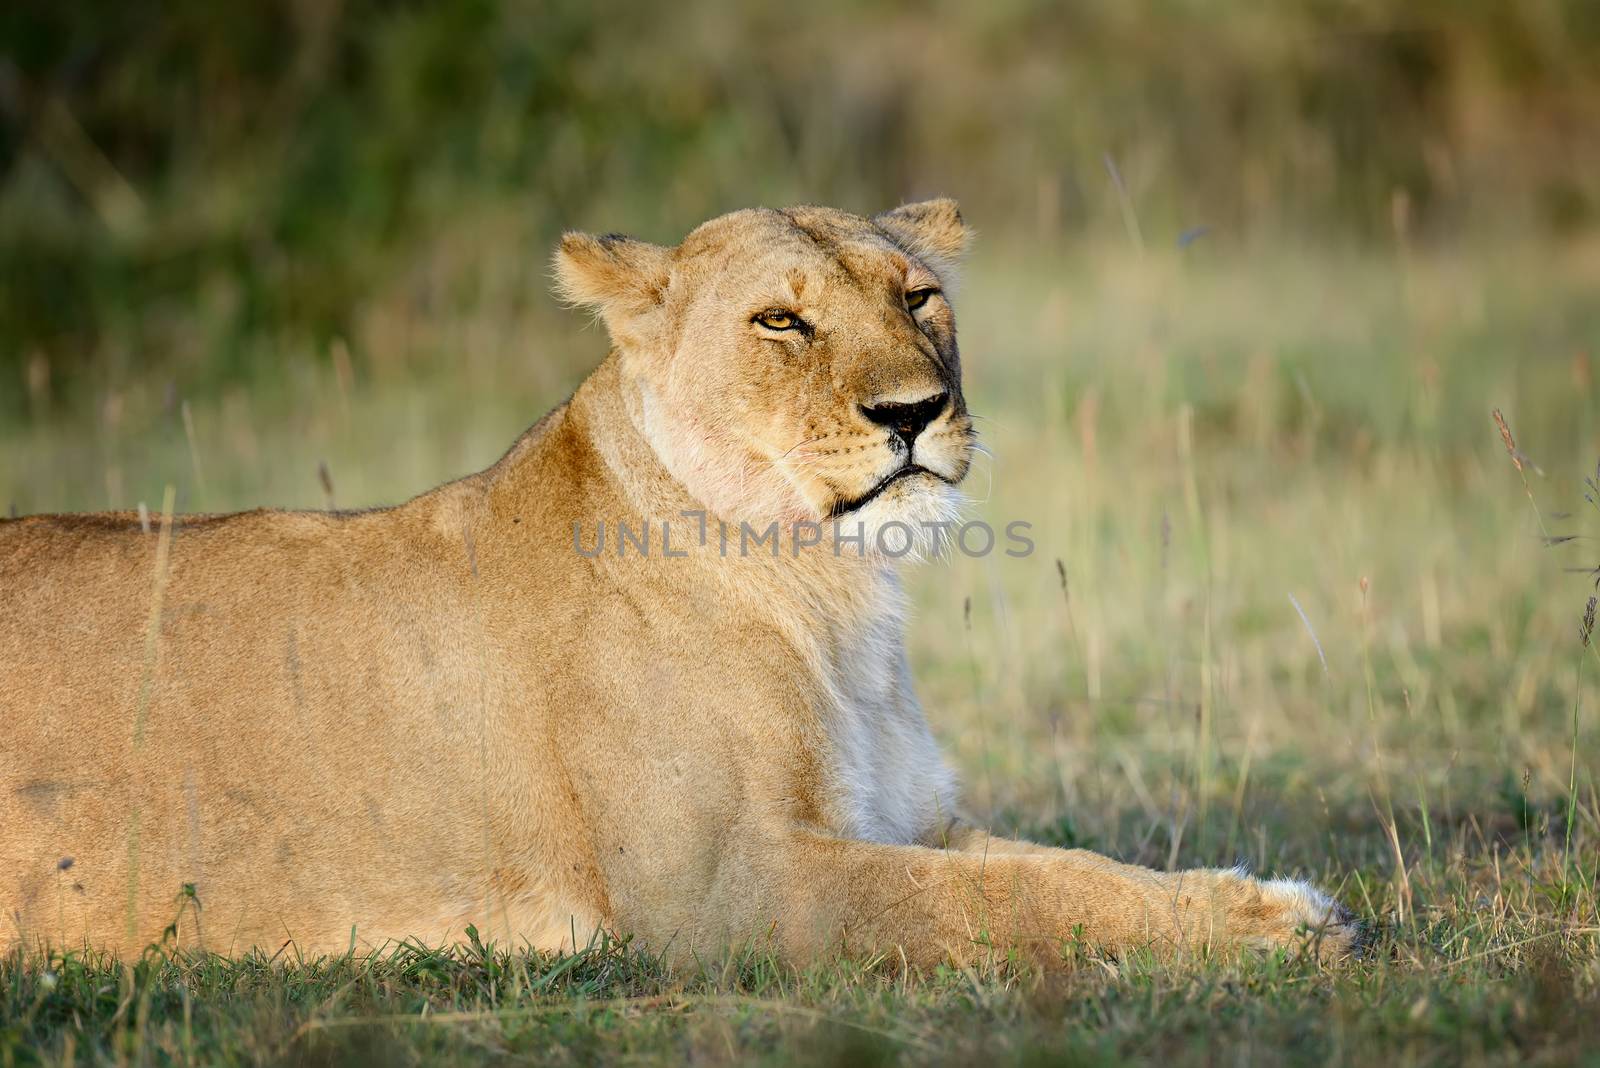 Close-up lion in National park of Kenya, Africa